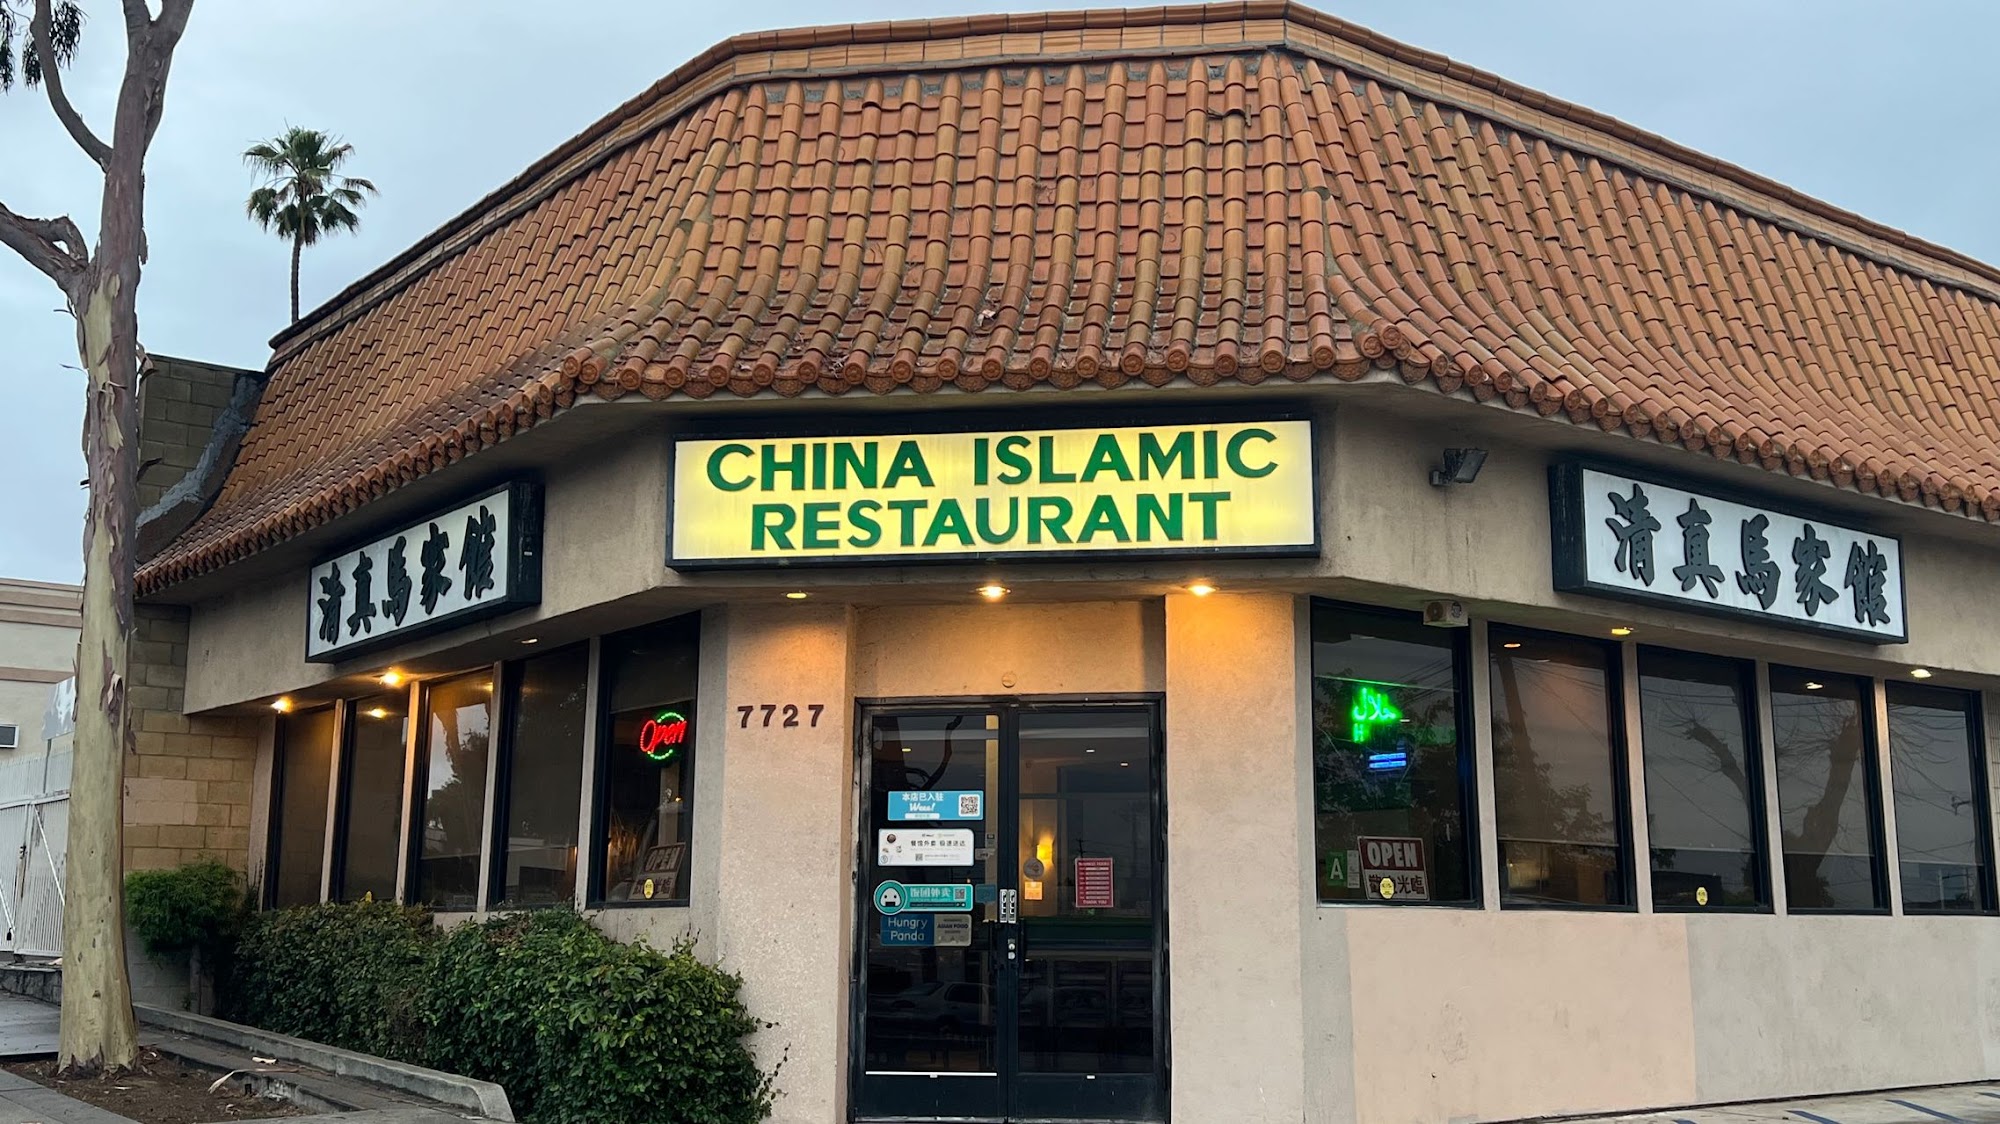 China Islamic Restaurant